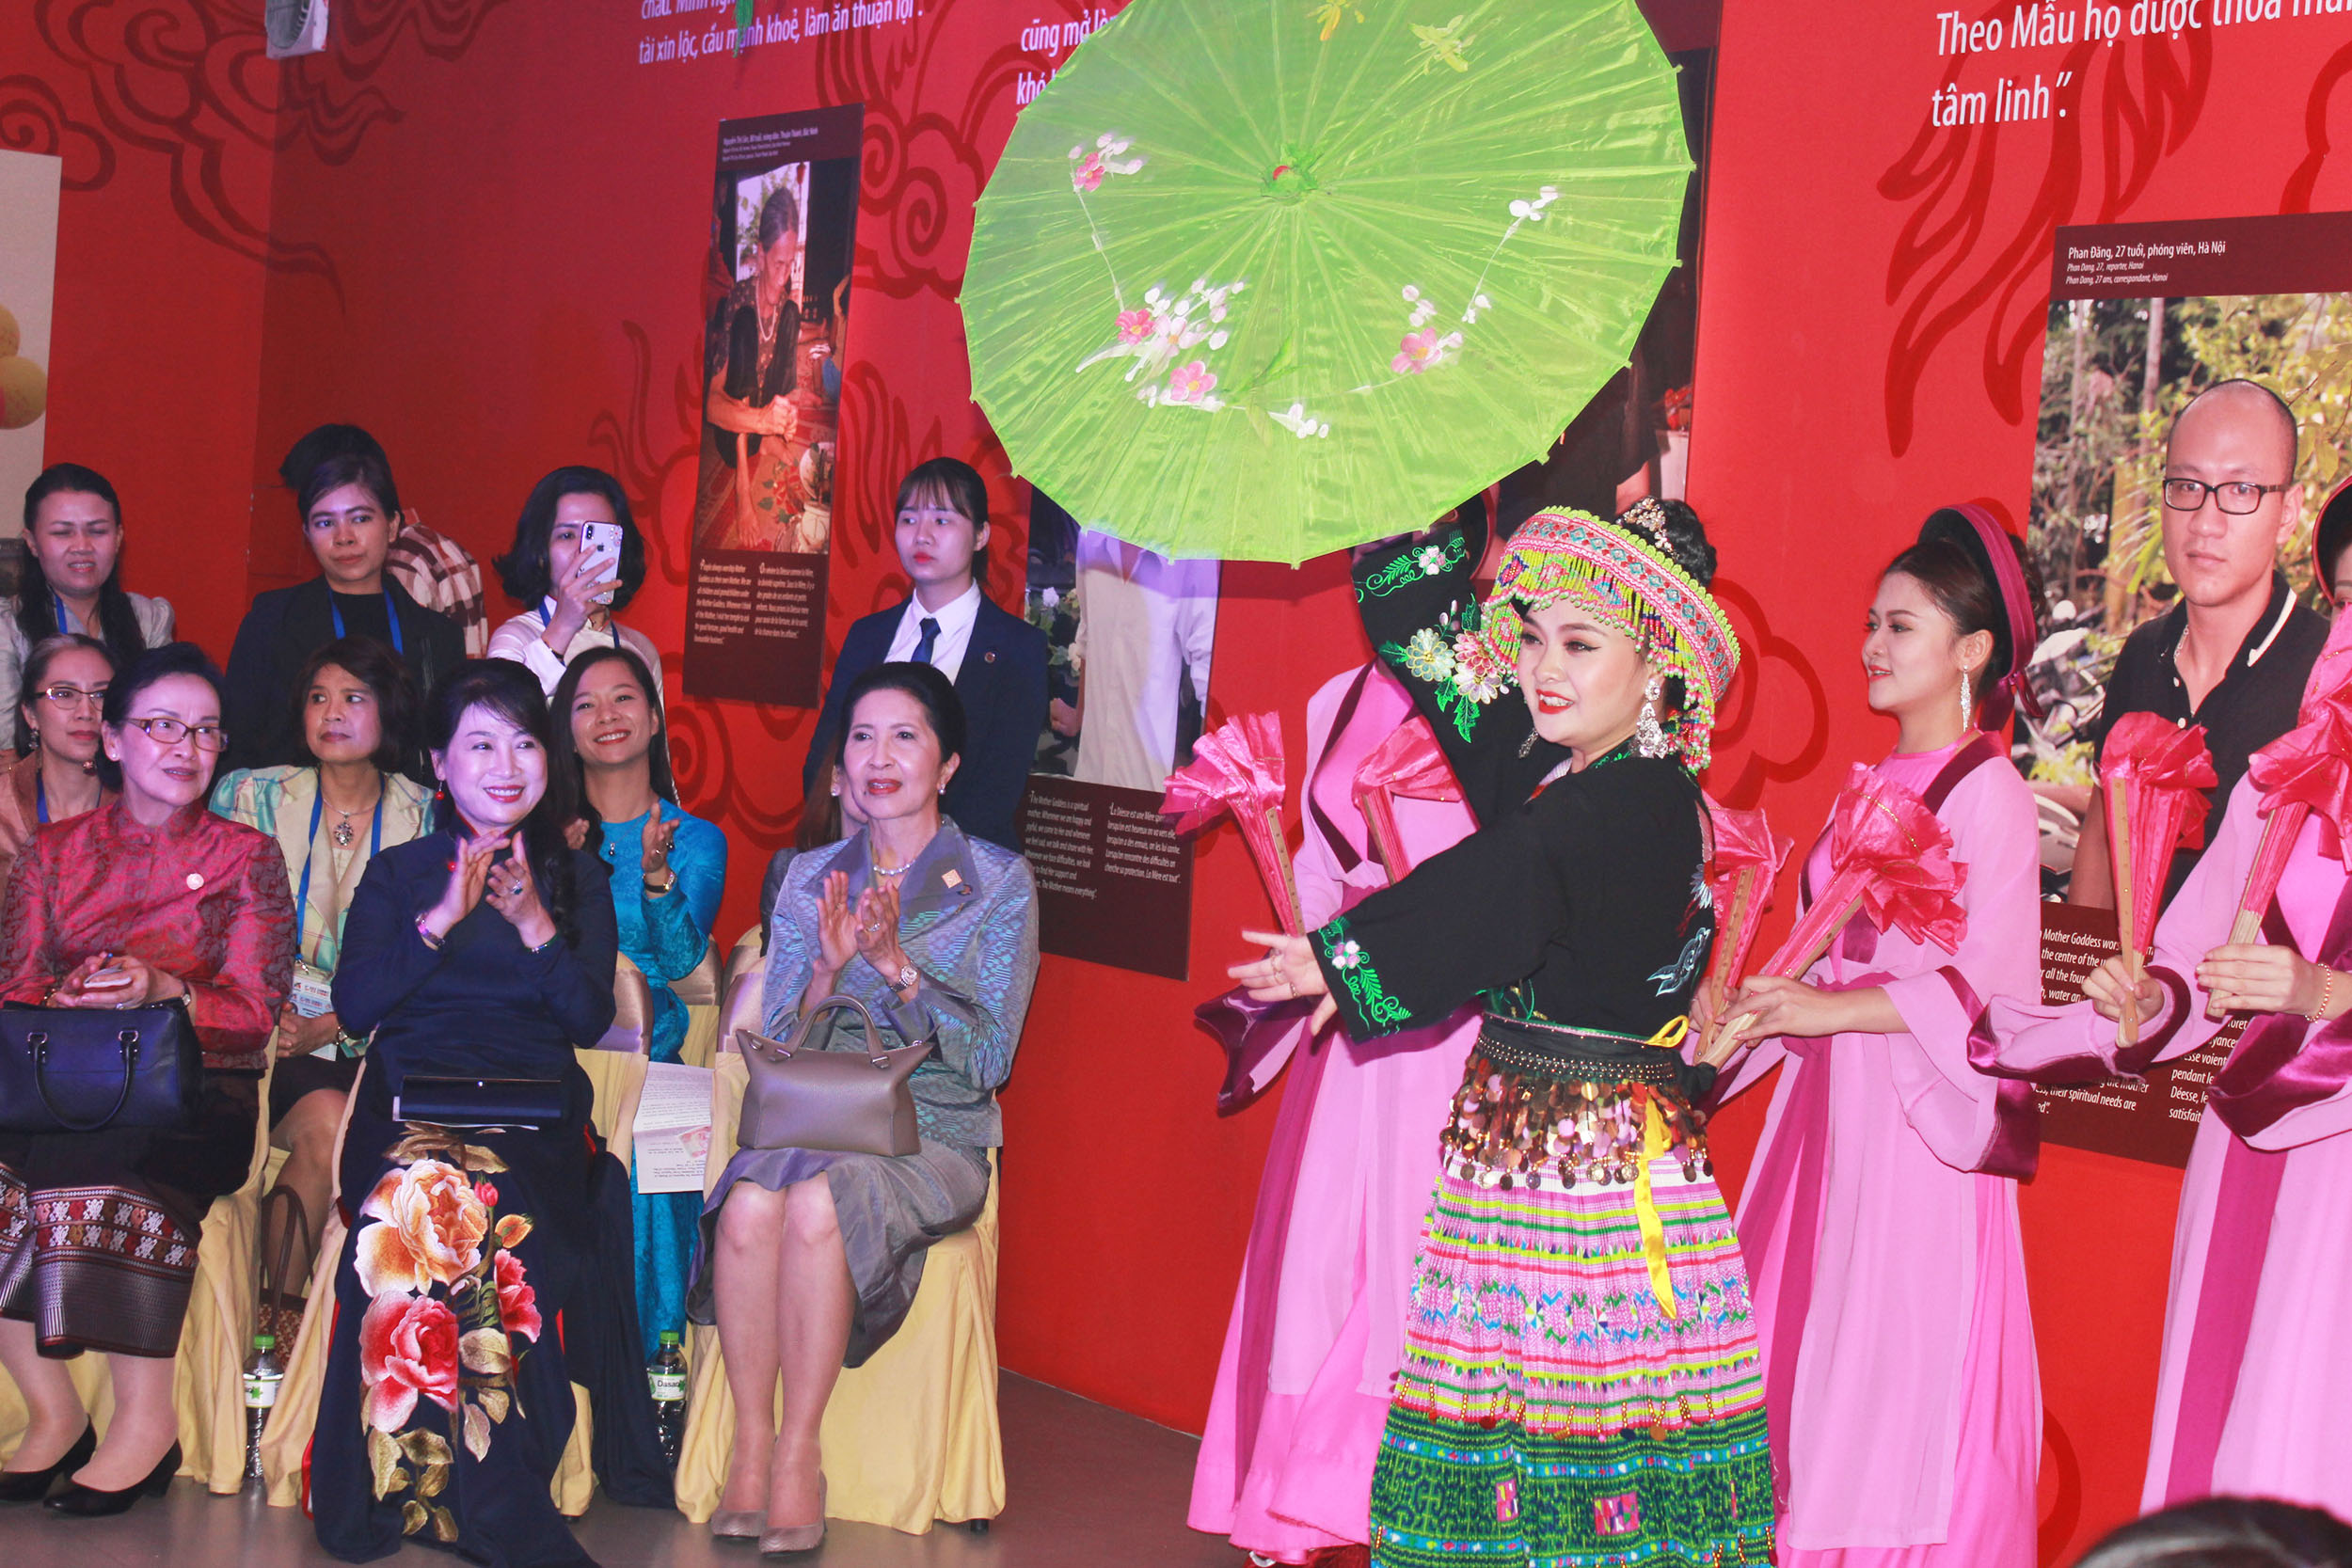 “Thực hành tín ngưỡng thờ Mẫu Tam phủ của người Việt” đã được UNESCO công nhận là Di sản văn hóa phi vật thể đại diện của nhân loại.